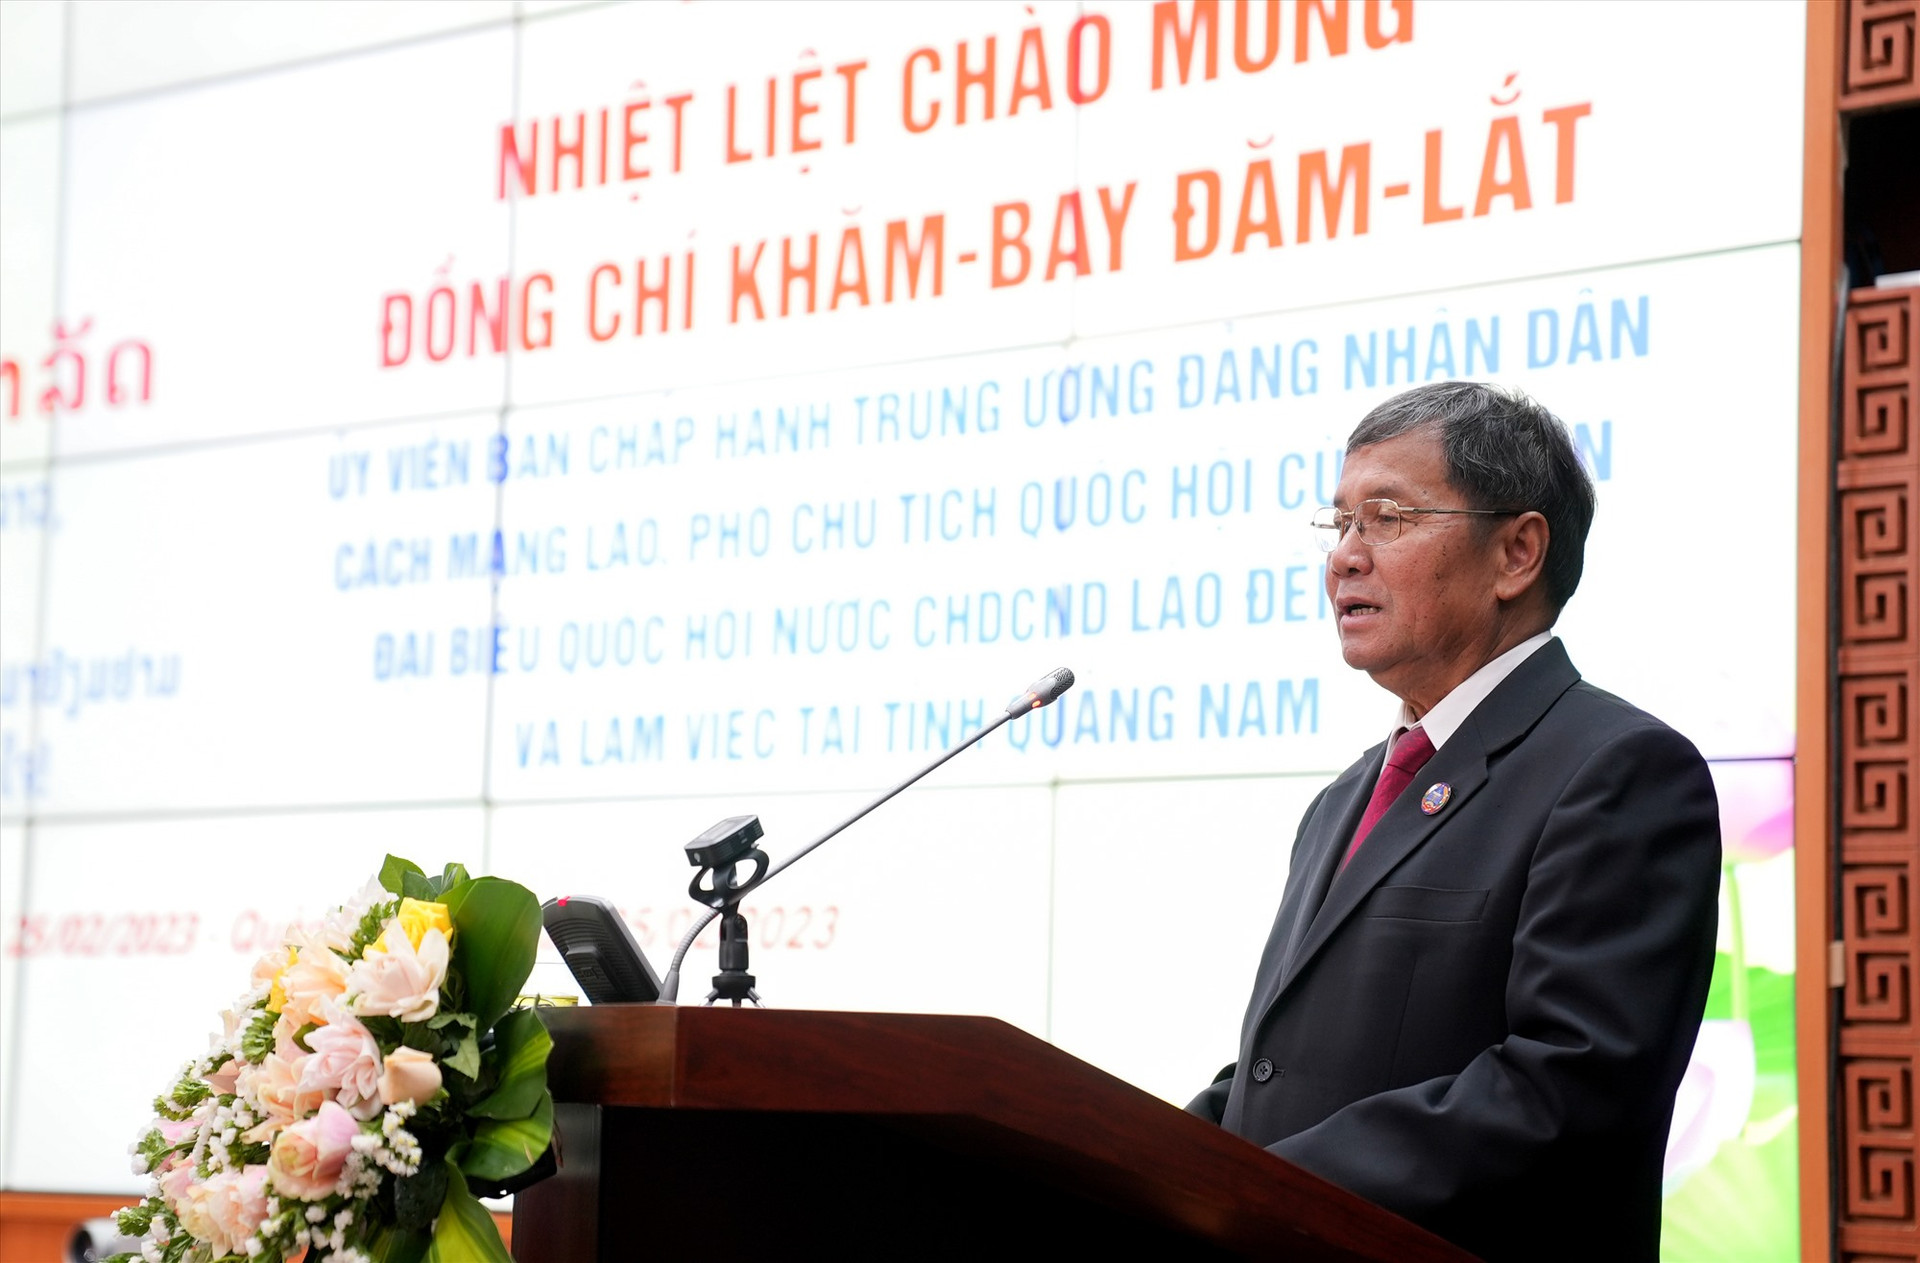 Ủy viên Ban Chấp hành Trung ương Đảng Nhân dân Cách mạng Lào, Phó Chủ tịch Quốc hội nước CHDCND Lào